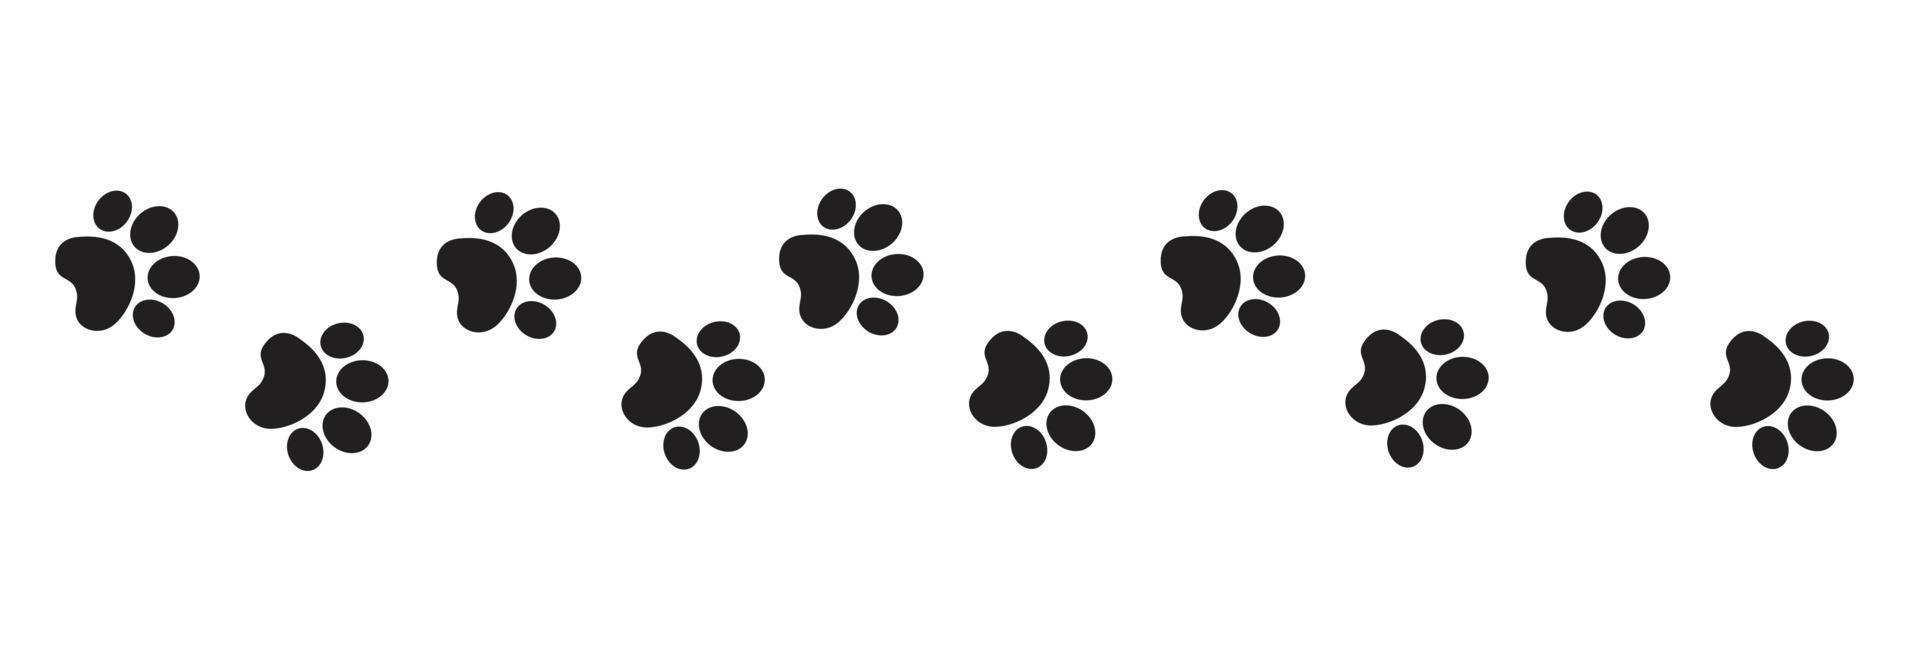 hond poten voetafdruk banier vector illustratie